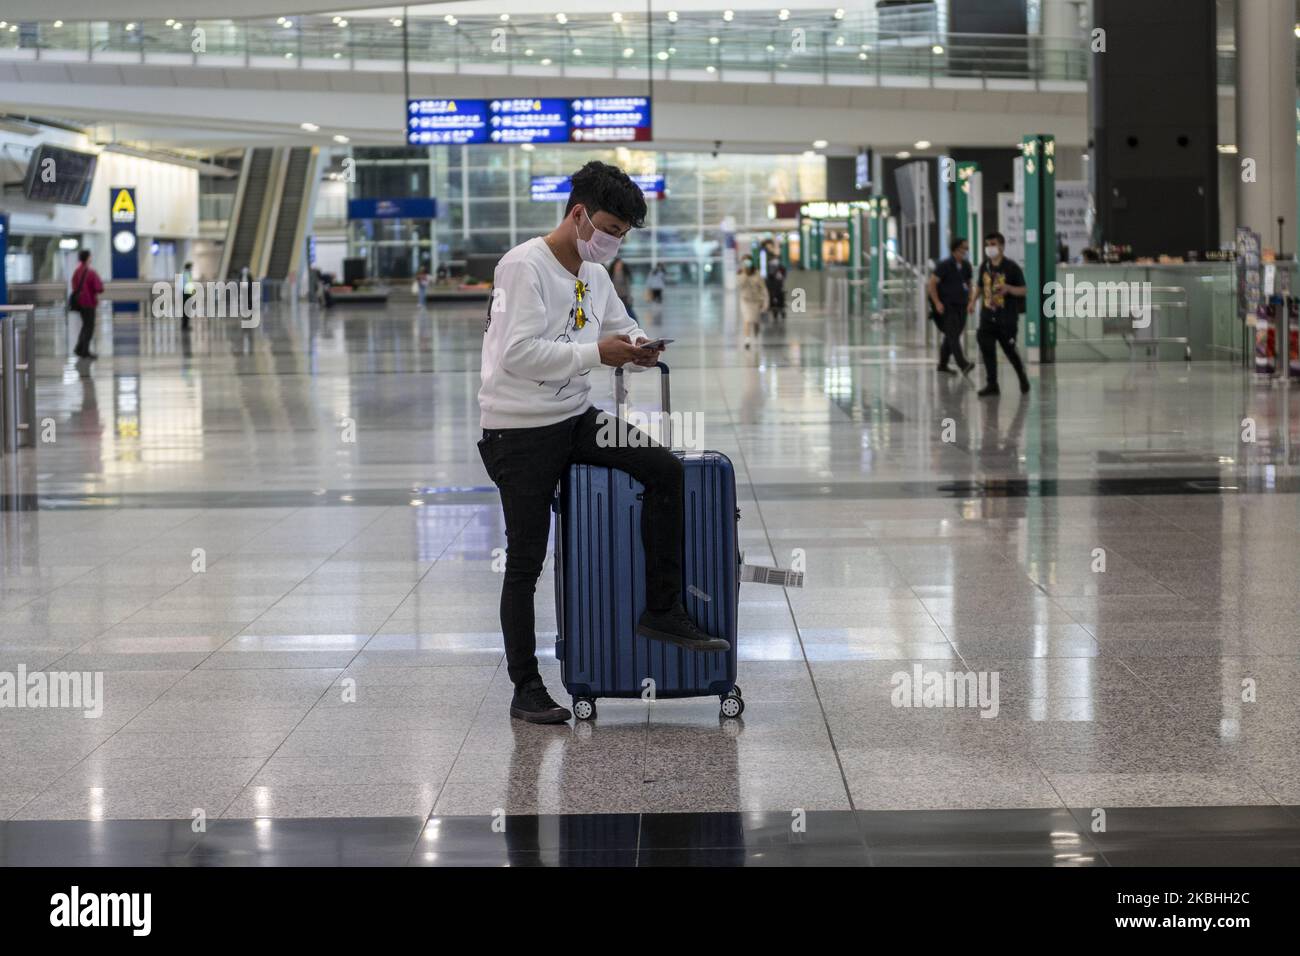 Am 22. Februar 2020 sitzt ein Mann mit einer Maske auf einem Gepäck im Terminal des Internationalen Flughafens von Hongkong in Hongkong, China. Das Coronavirus oder Covid-19, das aus Wuhan, China stammt, hat bis heute über 77.000 Menschen infiziert und 2361 Menschen weltweit getötet. Die Passagierflüge nach und aus Hongkong sind um zwei Drittel zurückgefallen, da die Fluggesellschaften Flüge annulliert haben und die Reisenden aufgrund des Coronavirus in Hongkong stürzte. (Foto von Vernon Yuen/NurPhoto) Stockfoto